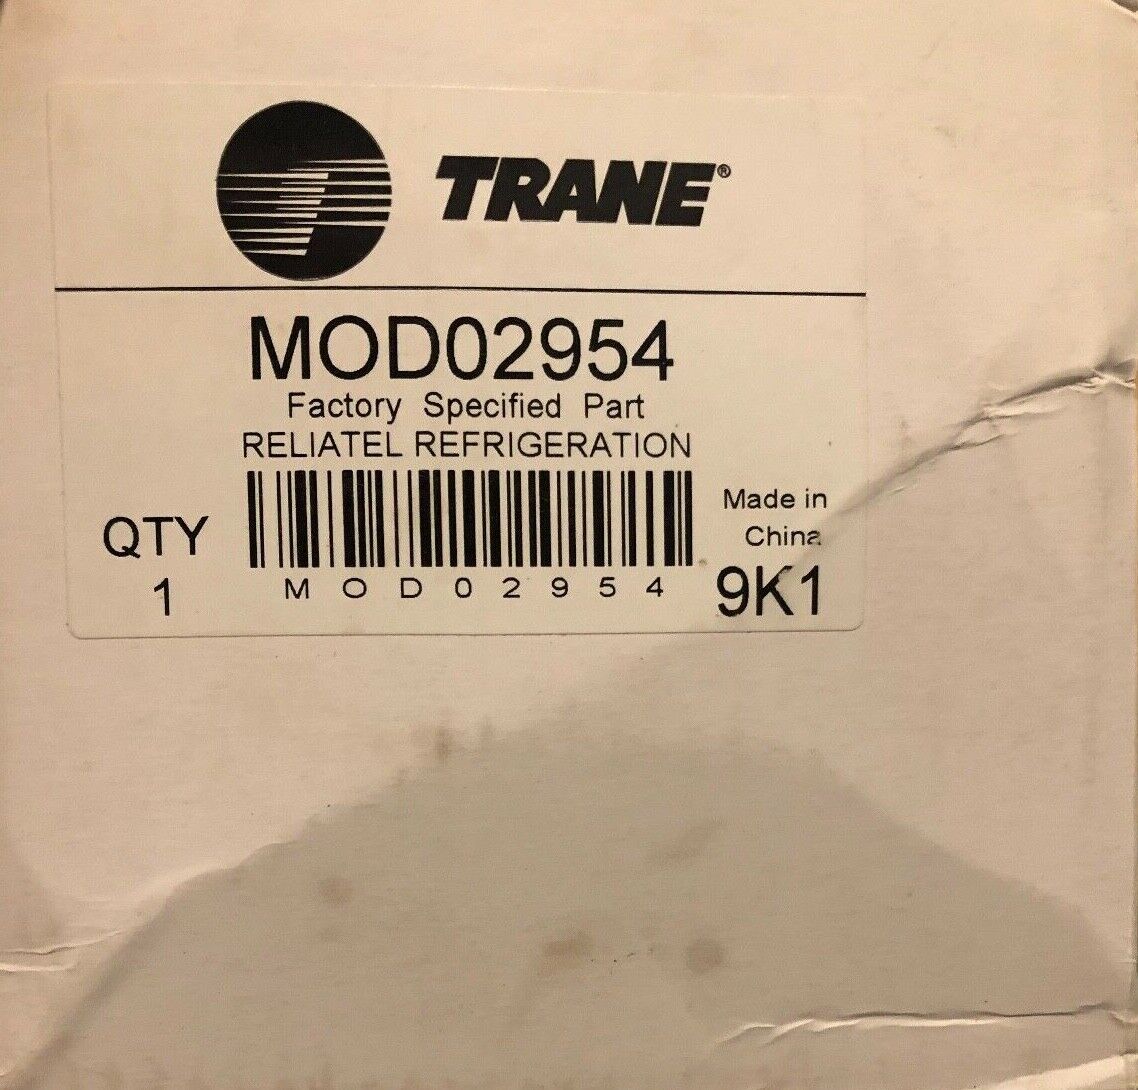 Trane MOD02954